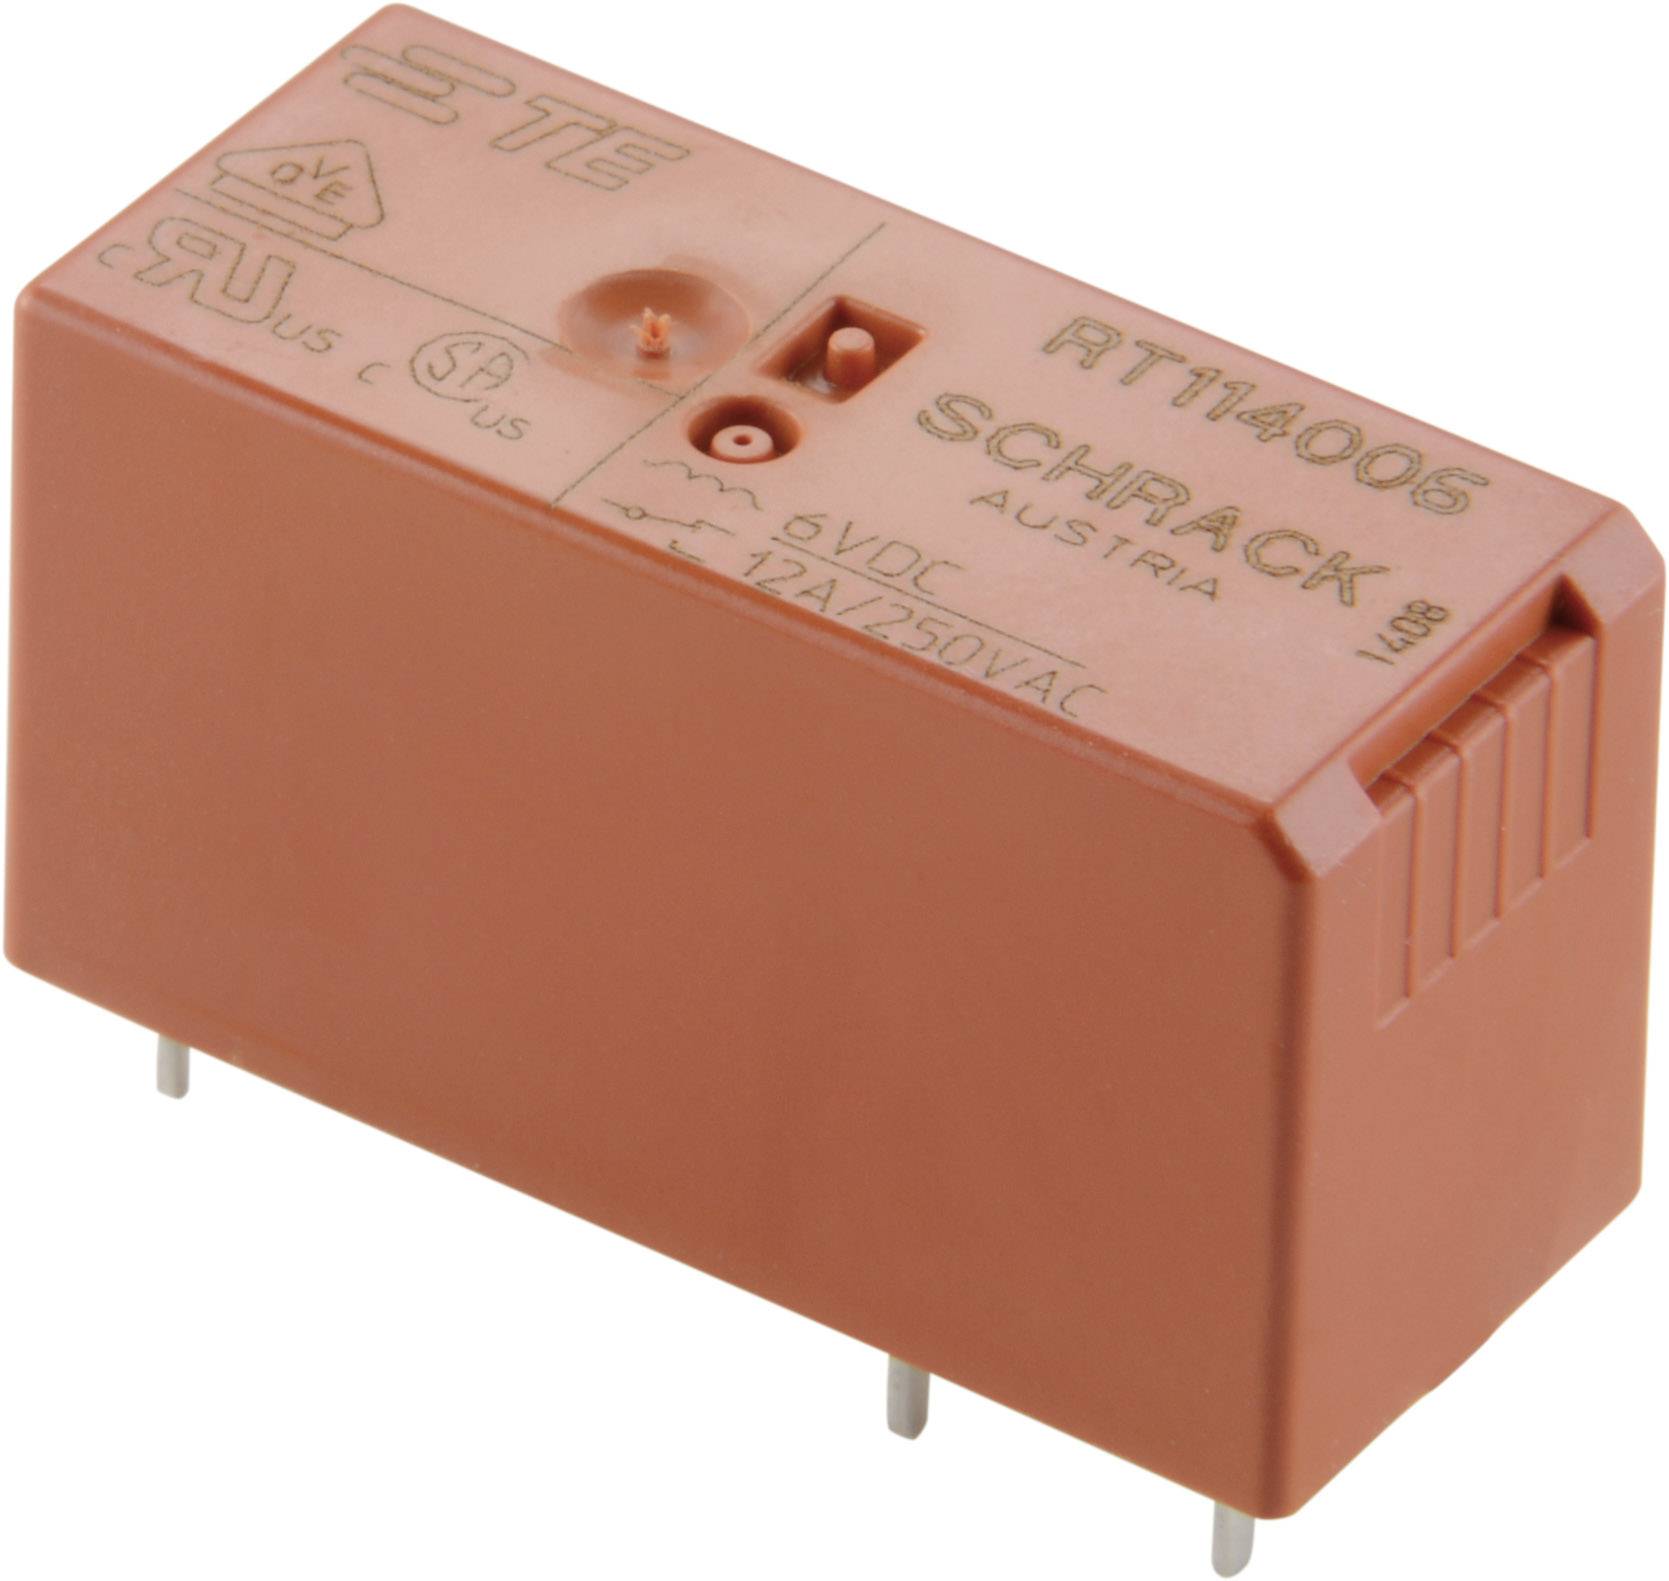 Relè relay 24V 24Vca 8A circuito stampato pcb 2 contatti c/o in scambio RT424524 